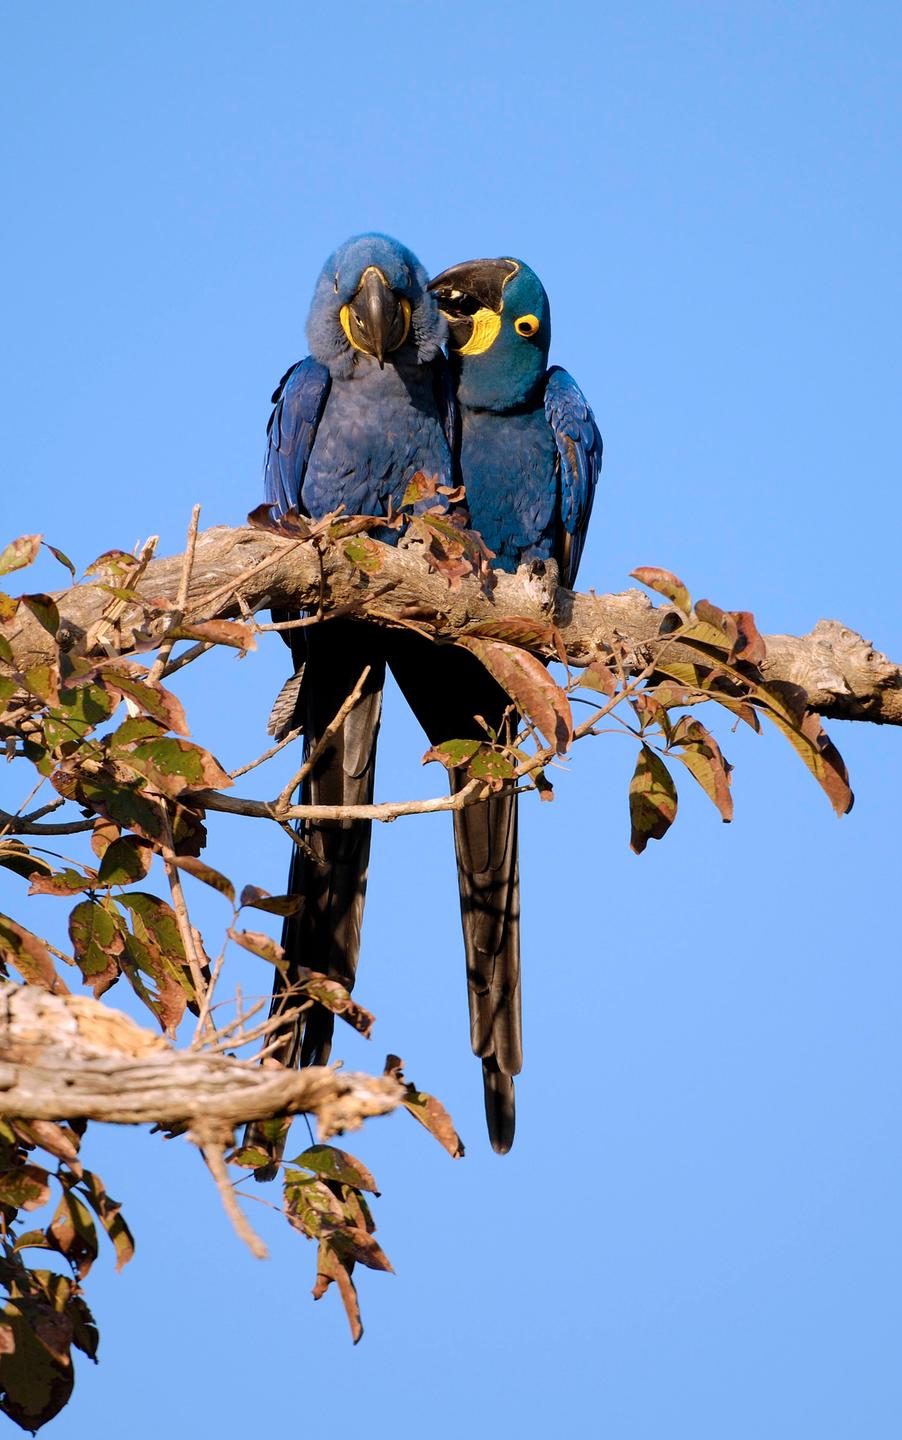 Zwei große dunkelblaue Ara-Papageien sitzten auf einem Ast und schmusen.